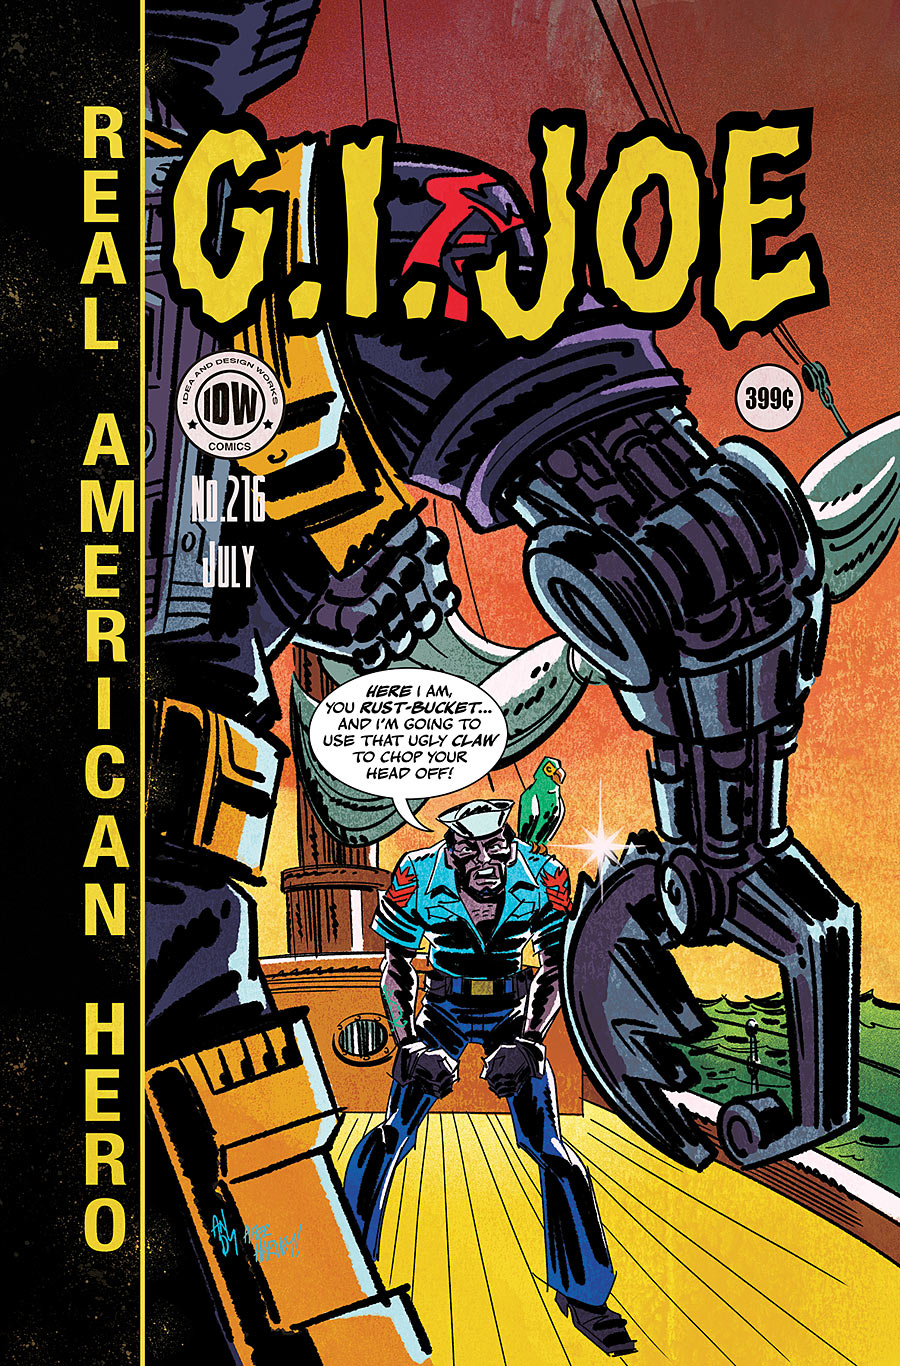 G.I. Joe: A Real American Hero #216